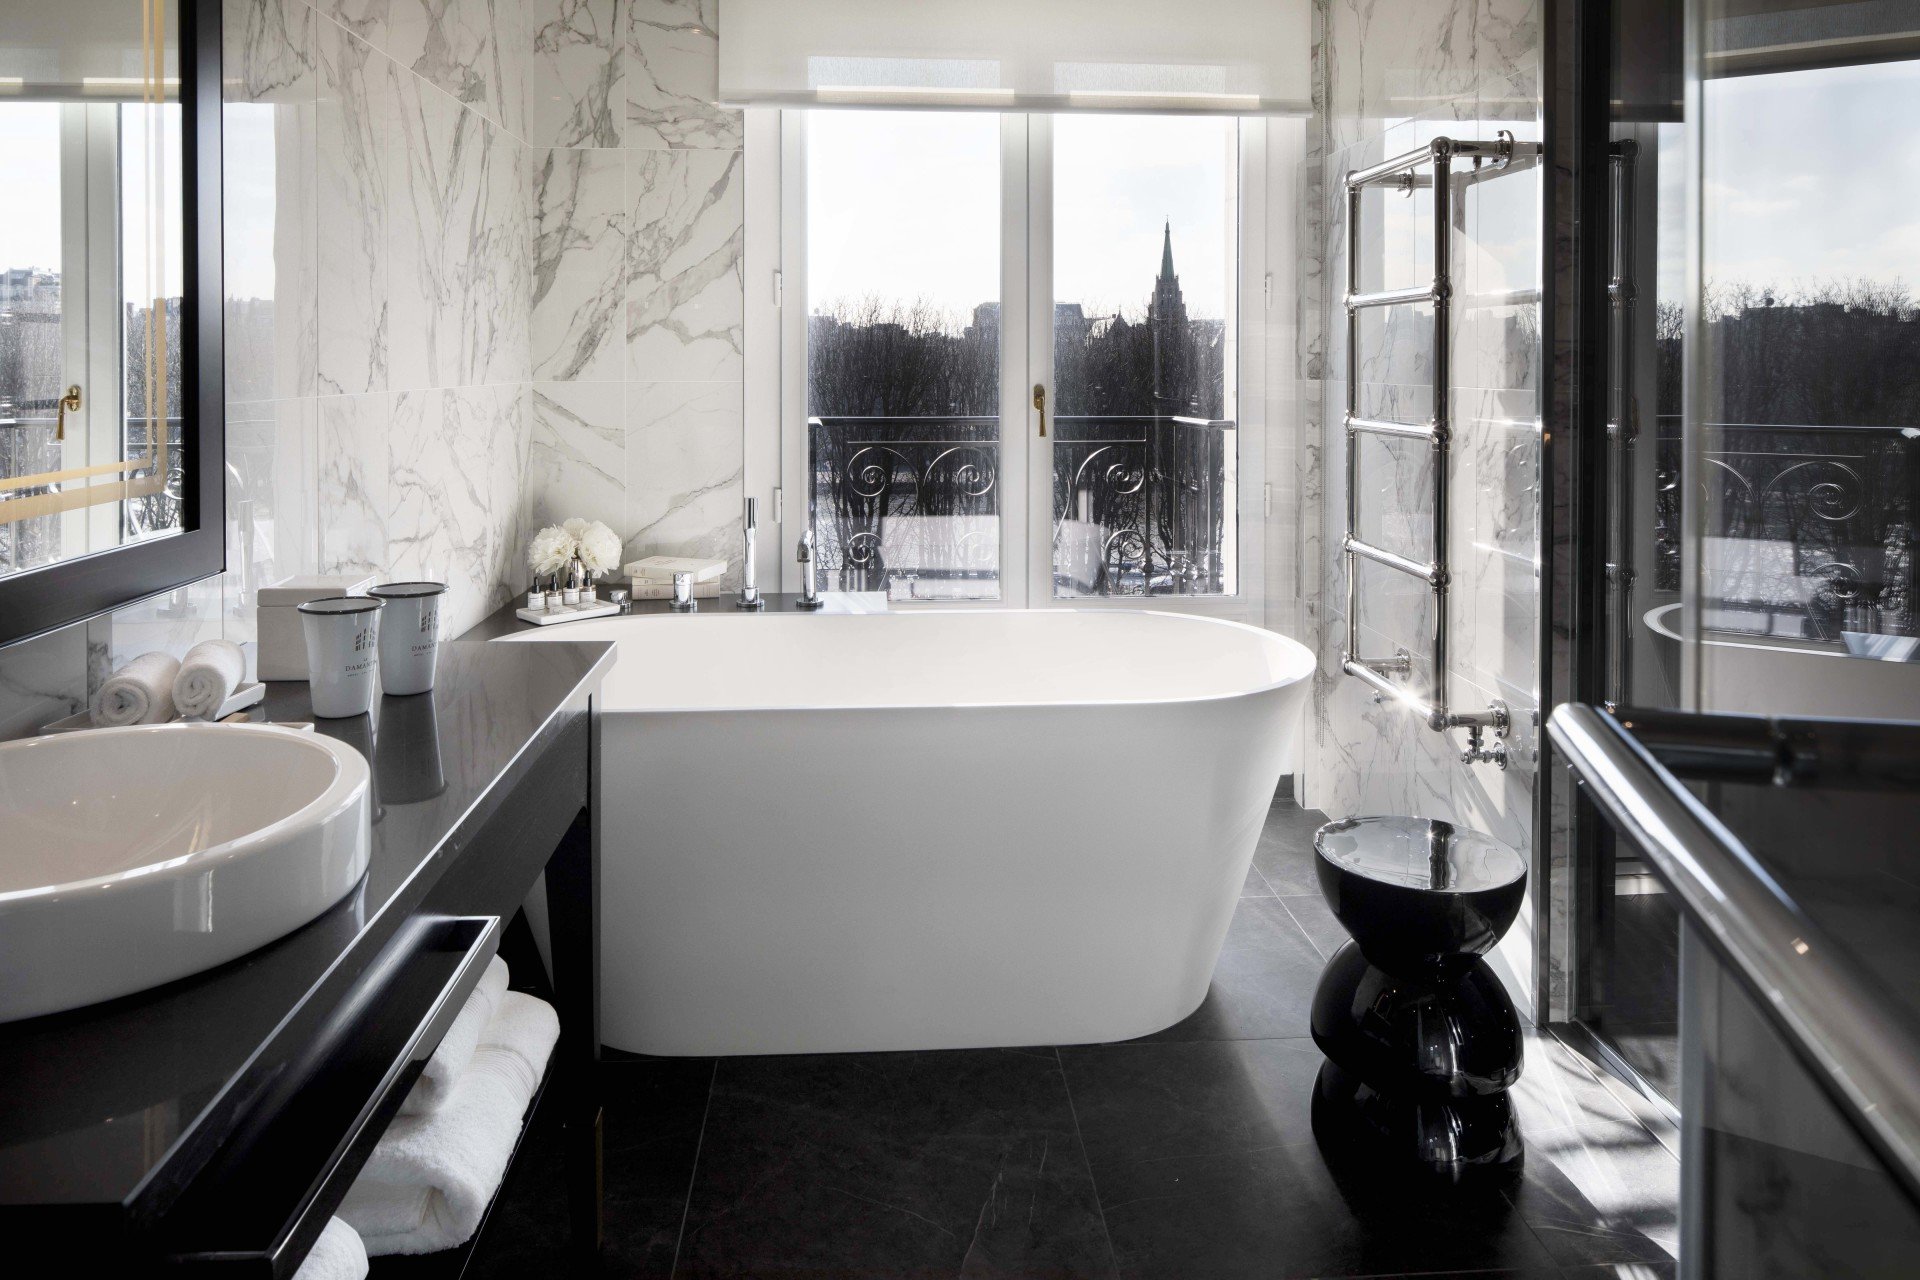 Hotel et Spa Le Damantin Paris - hôtel de luxe designé par le studio d'architecture d'intérieur jean-philippe nuel - salle de bain luxueuse, marbre, baignoire et douche, vue sur paris